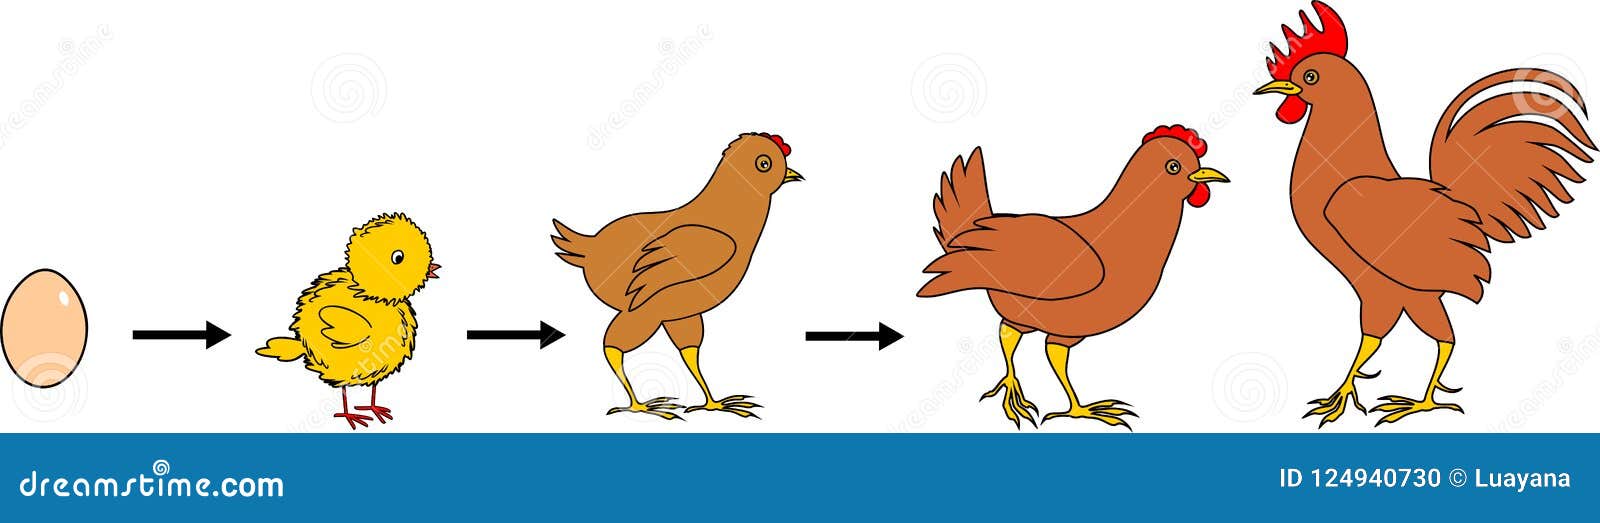 como desenhar uma galinha usando um ovo de maneira rápida e fácil